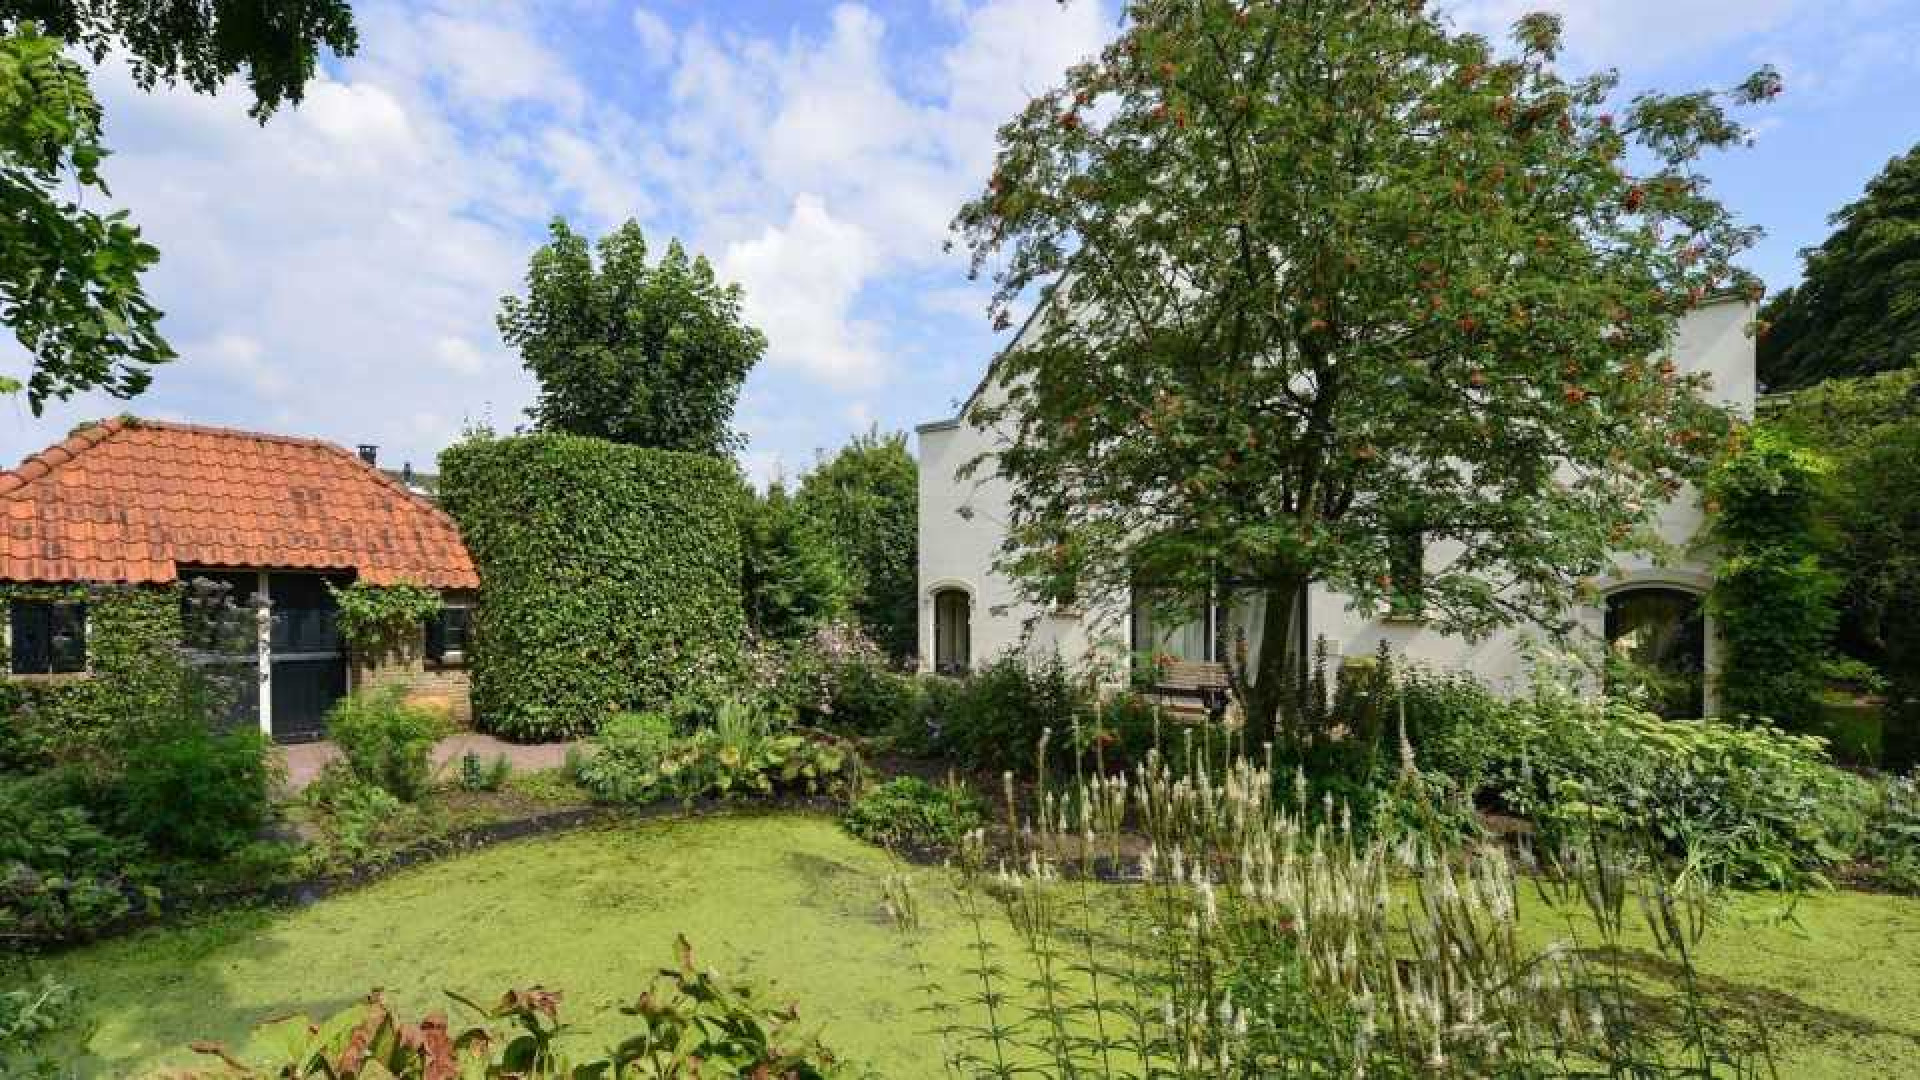 Prinses Irene verkoopt haar landhuis in Wijk bij Duurstede. Zie foto's 10